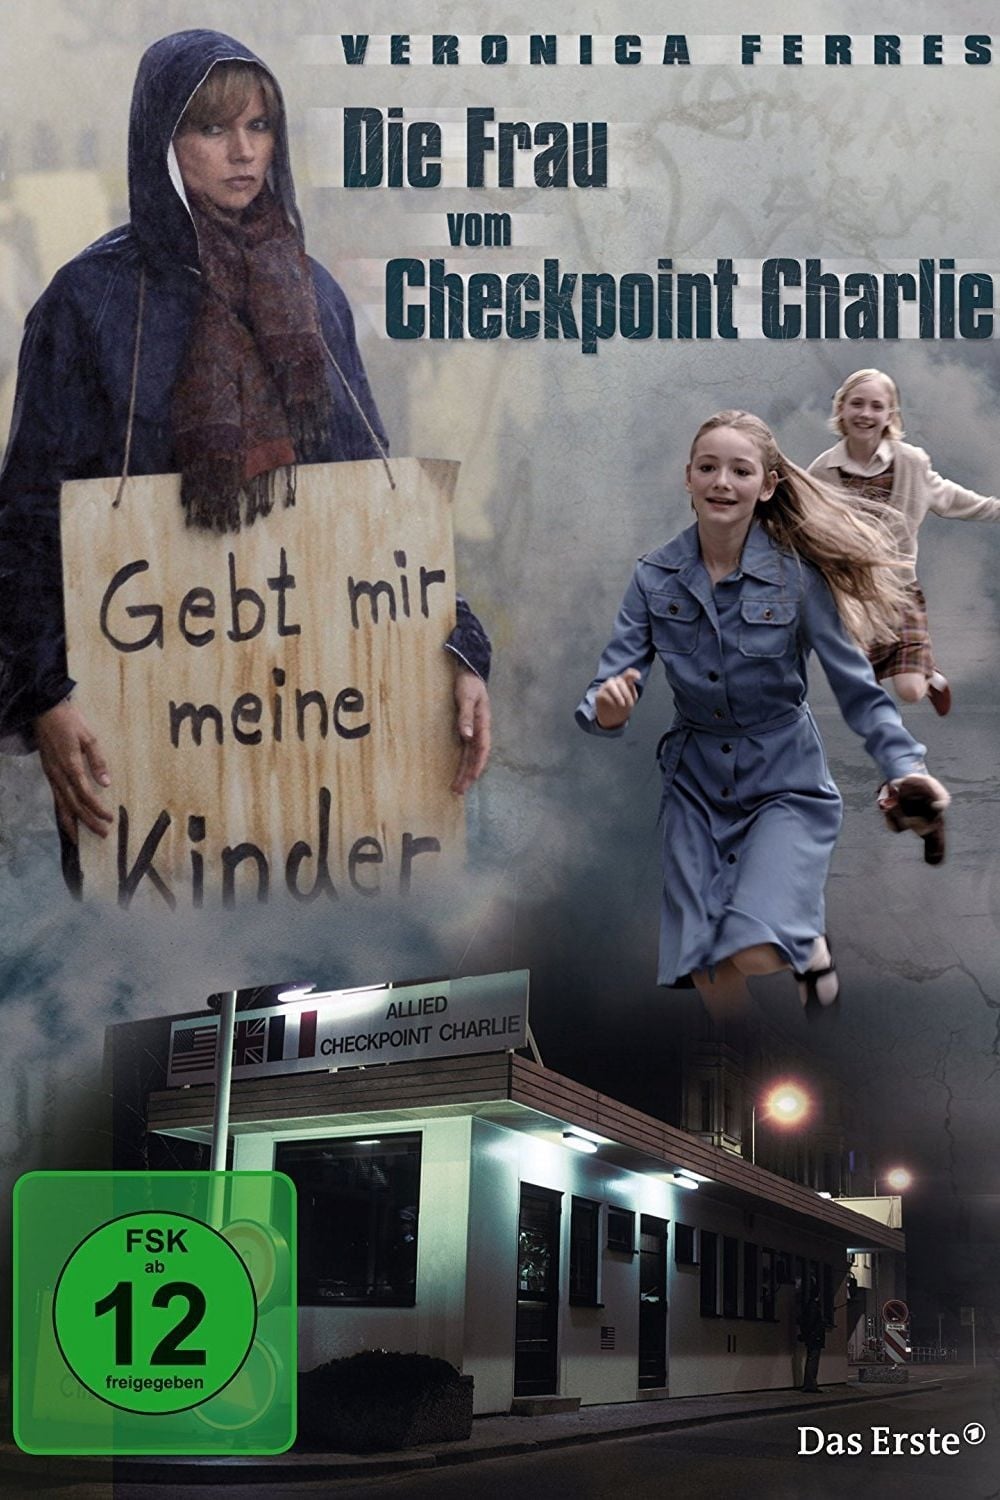 Die Frau vom Checkpoint Charlie TV Shows About Democrat